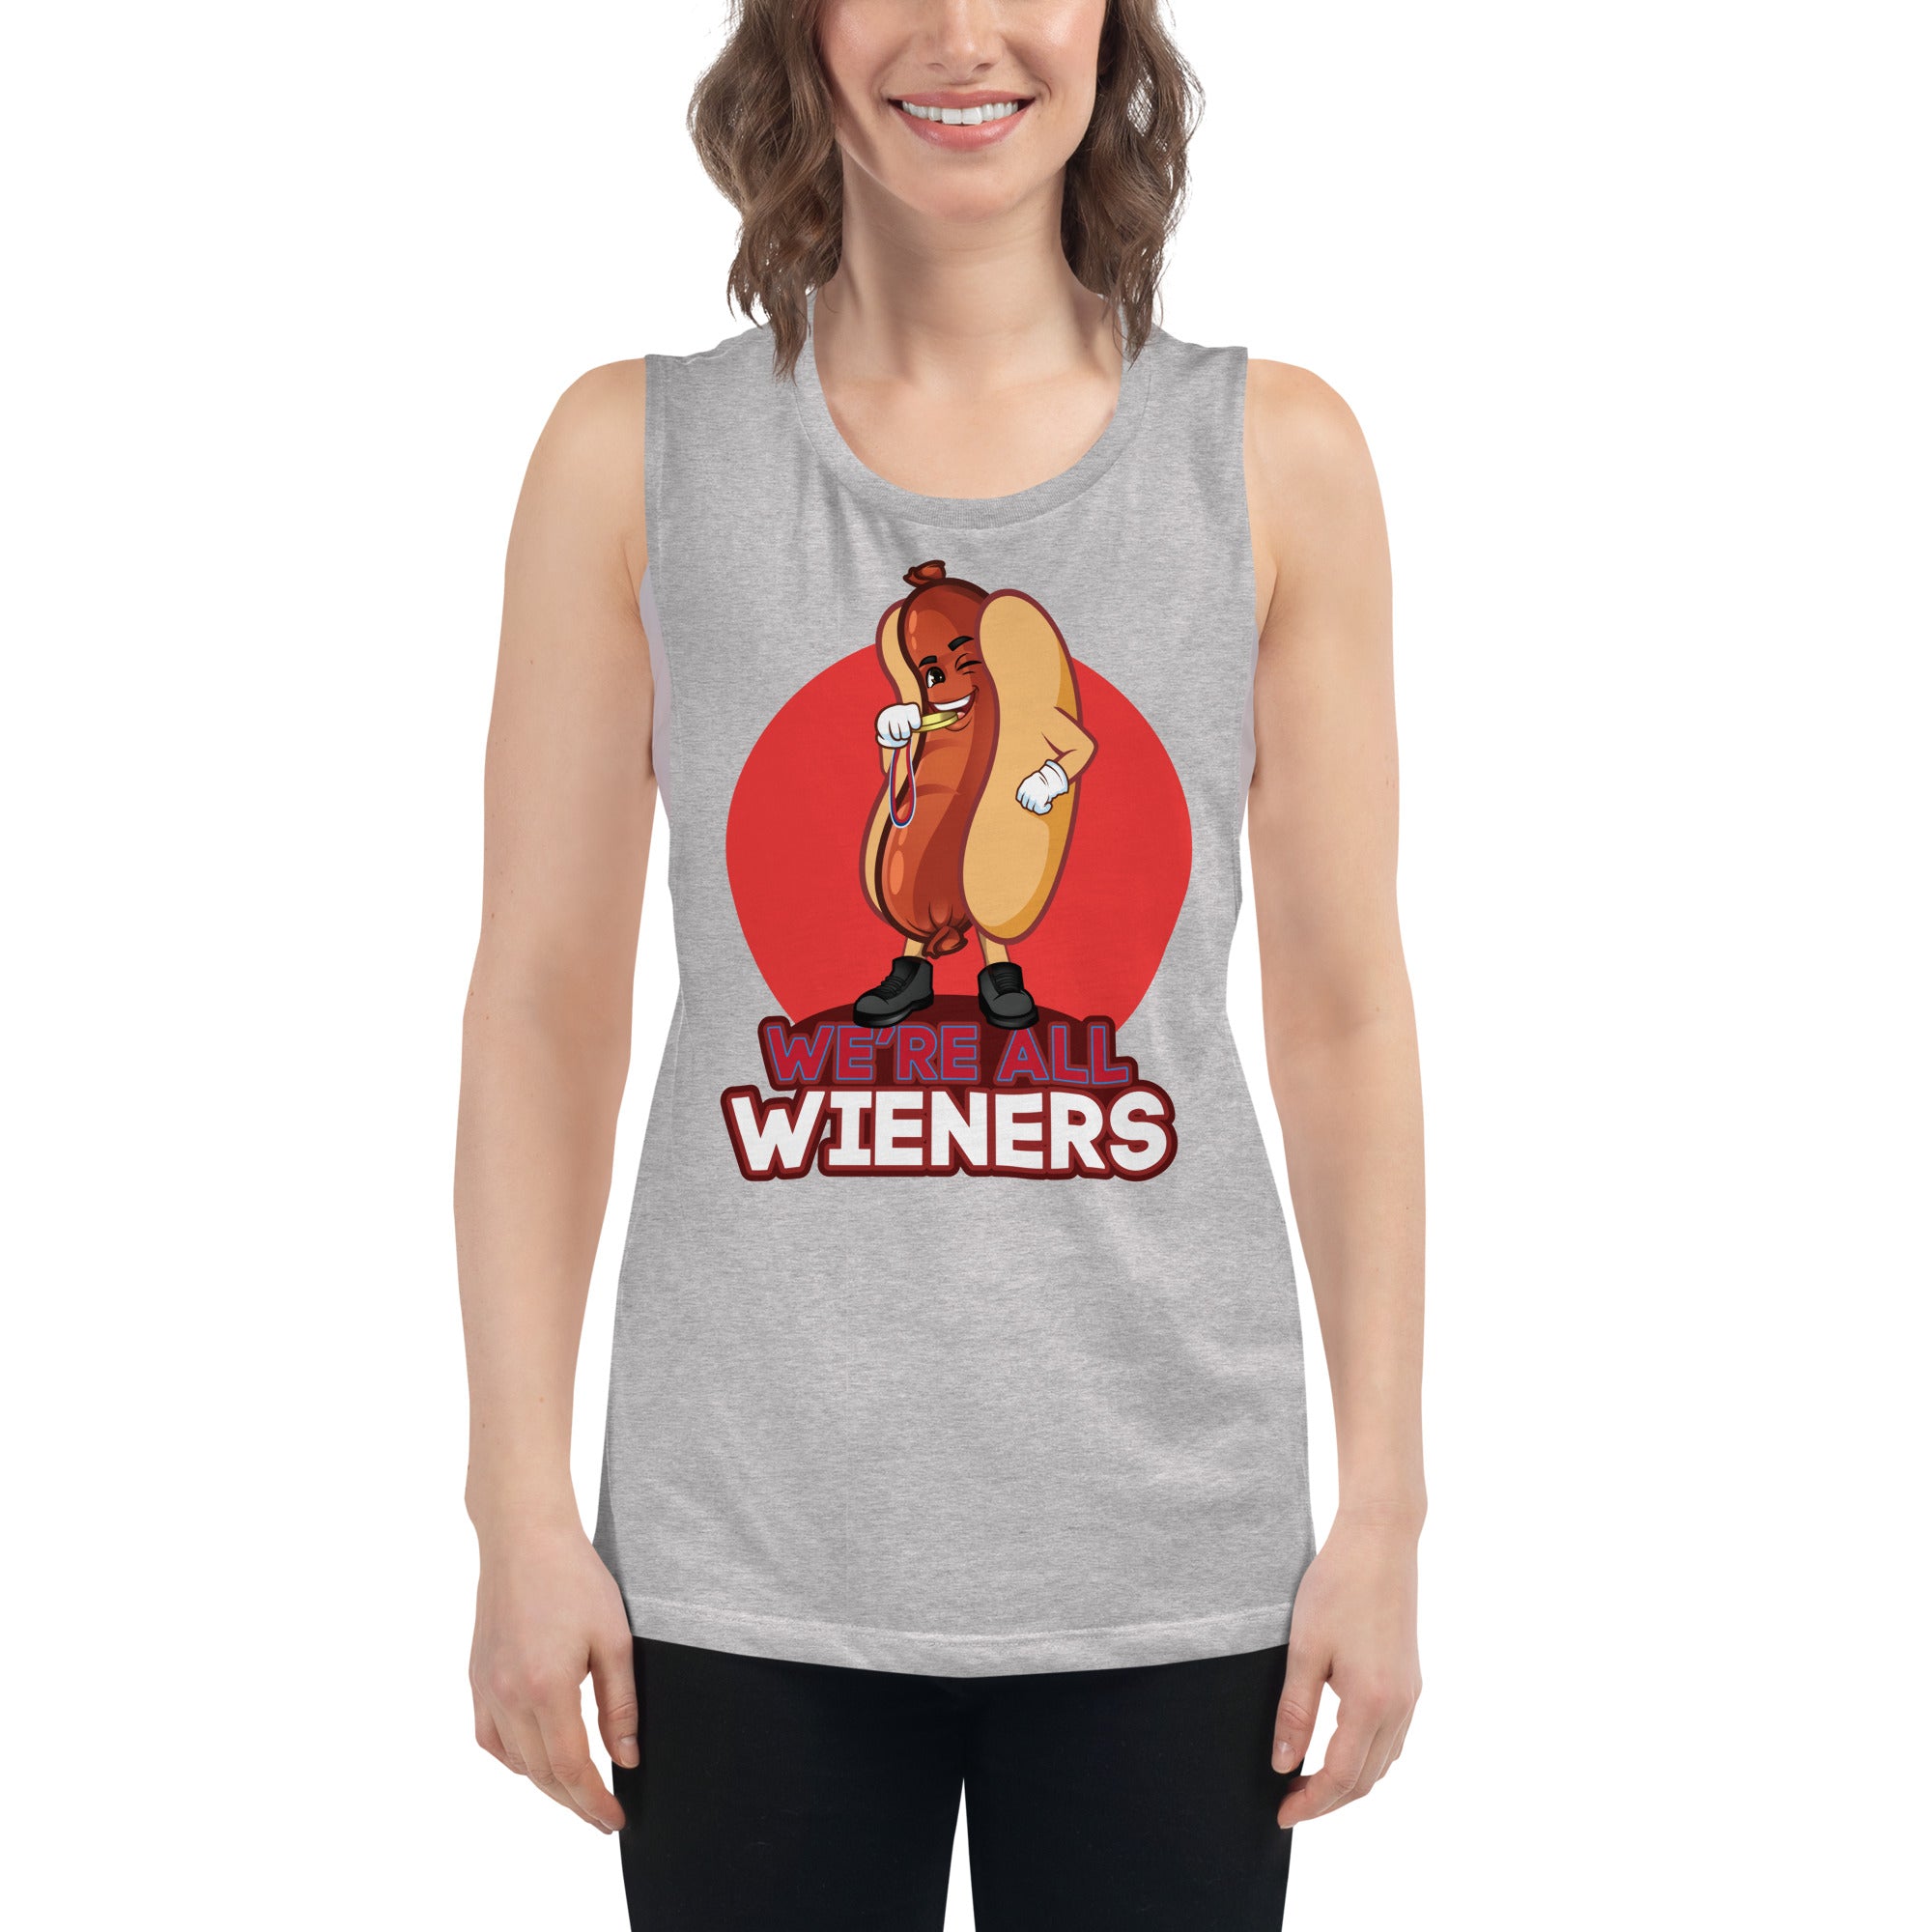 We're All Wieners Women's Muscle Tank - Red